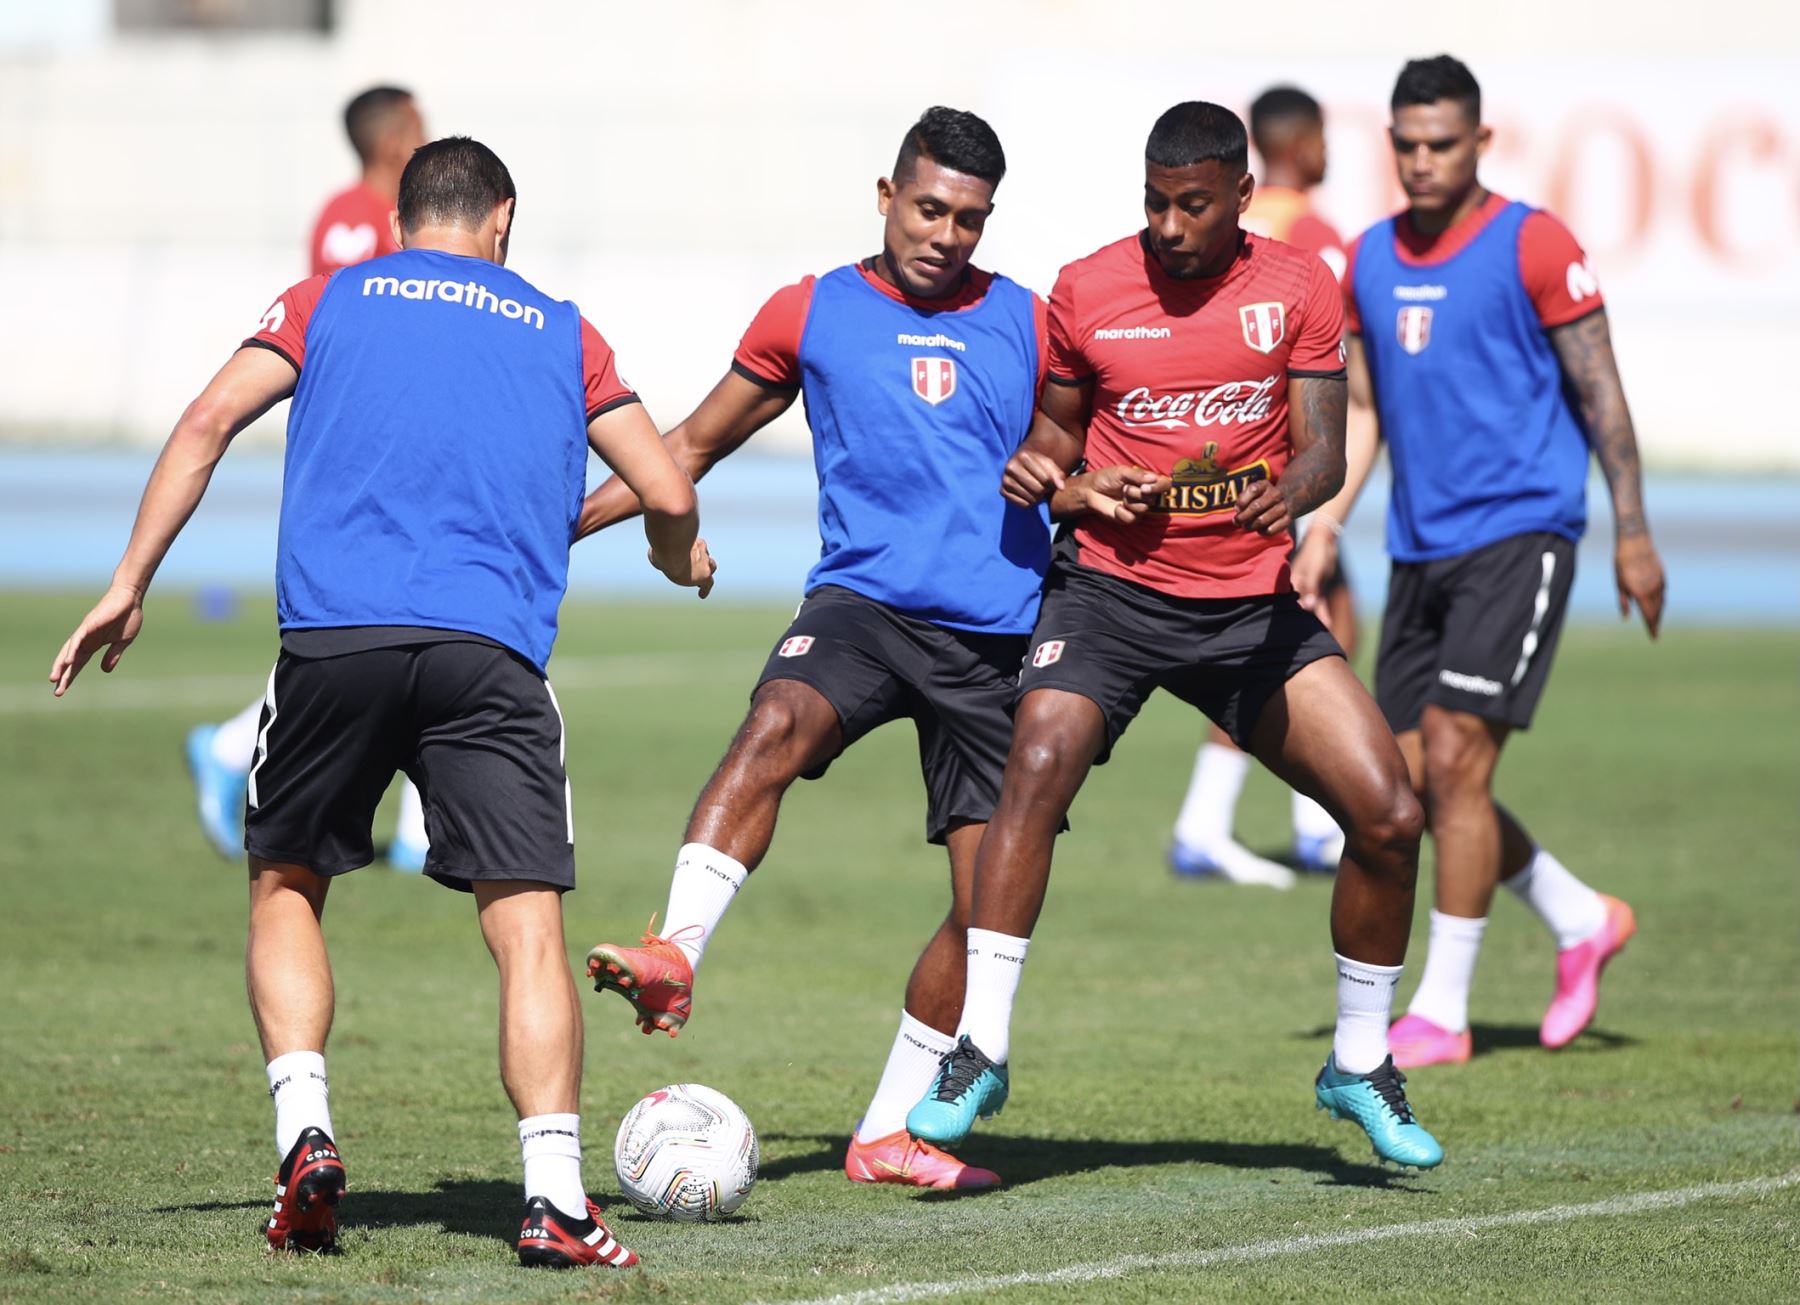 La selección peruana realizó su primer entrenamiento en tierras brasileñas para su debut en la Copa América 2021, el jueves 17 de junio ante Brasil